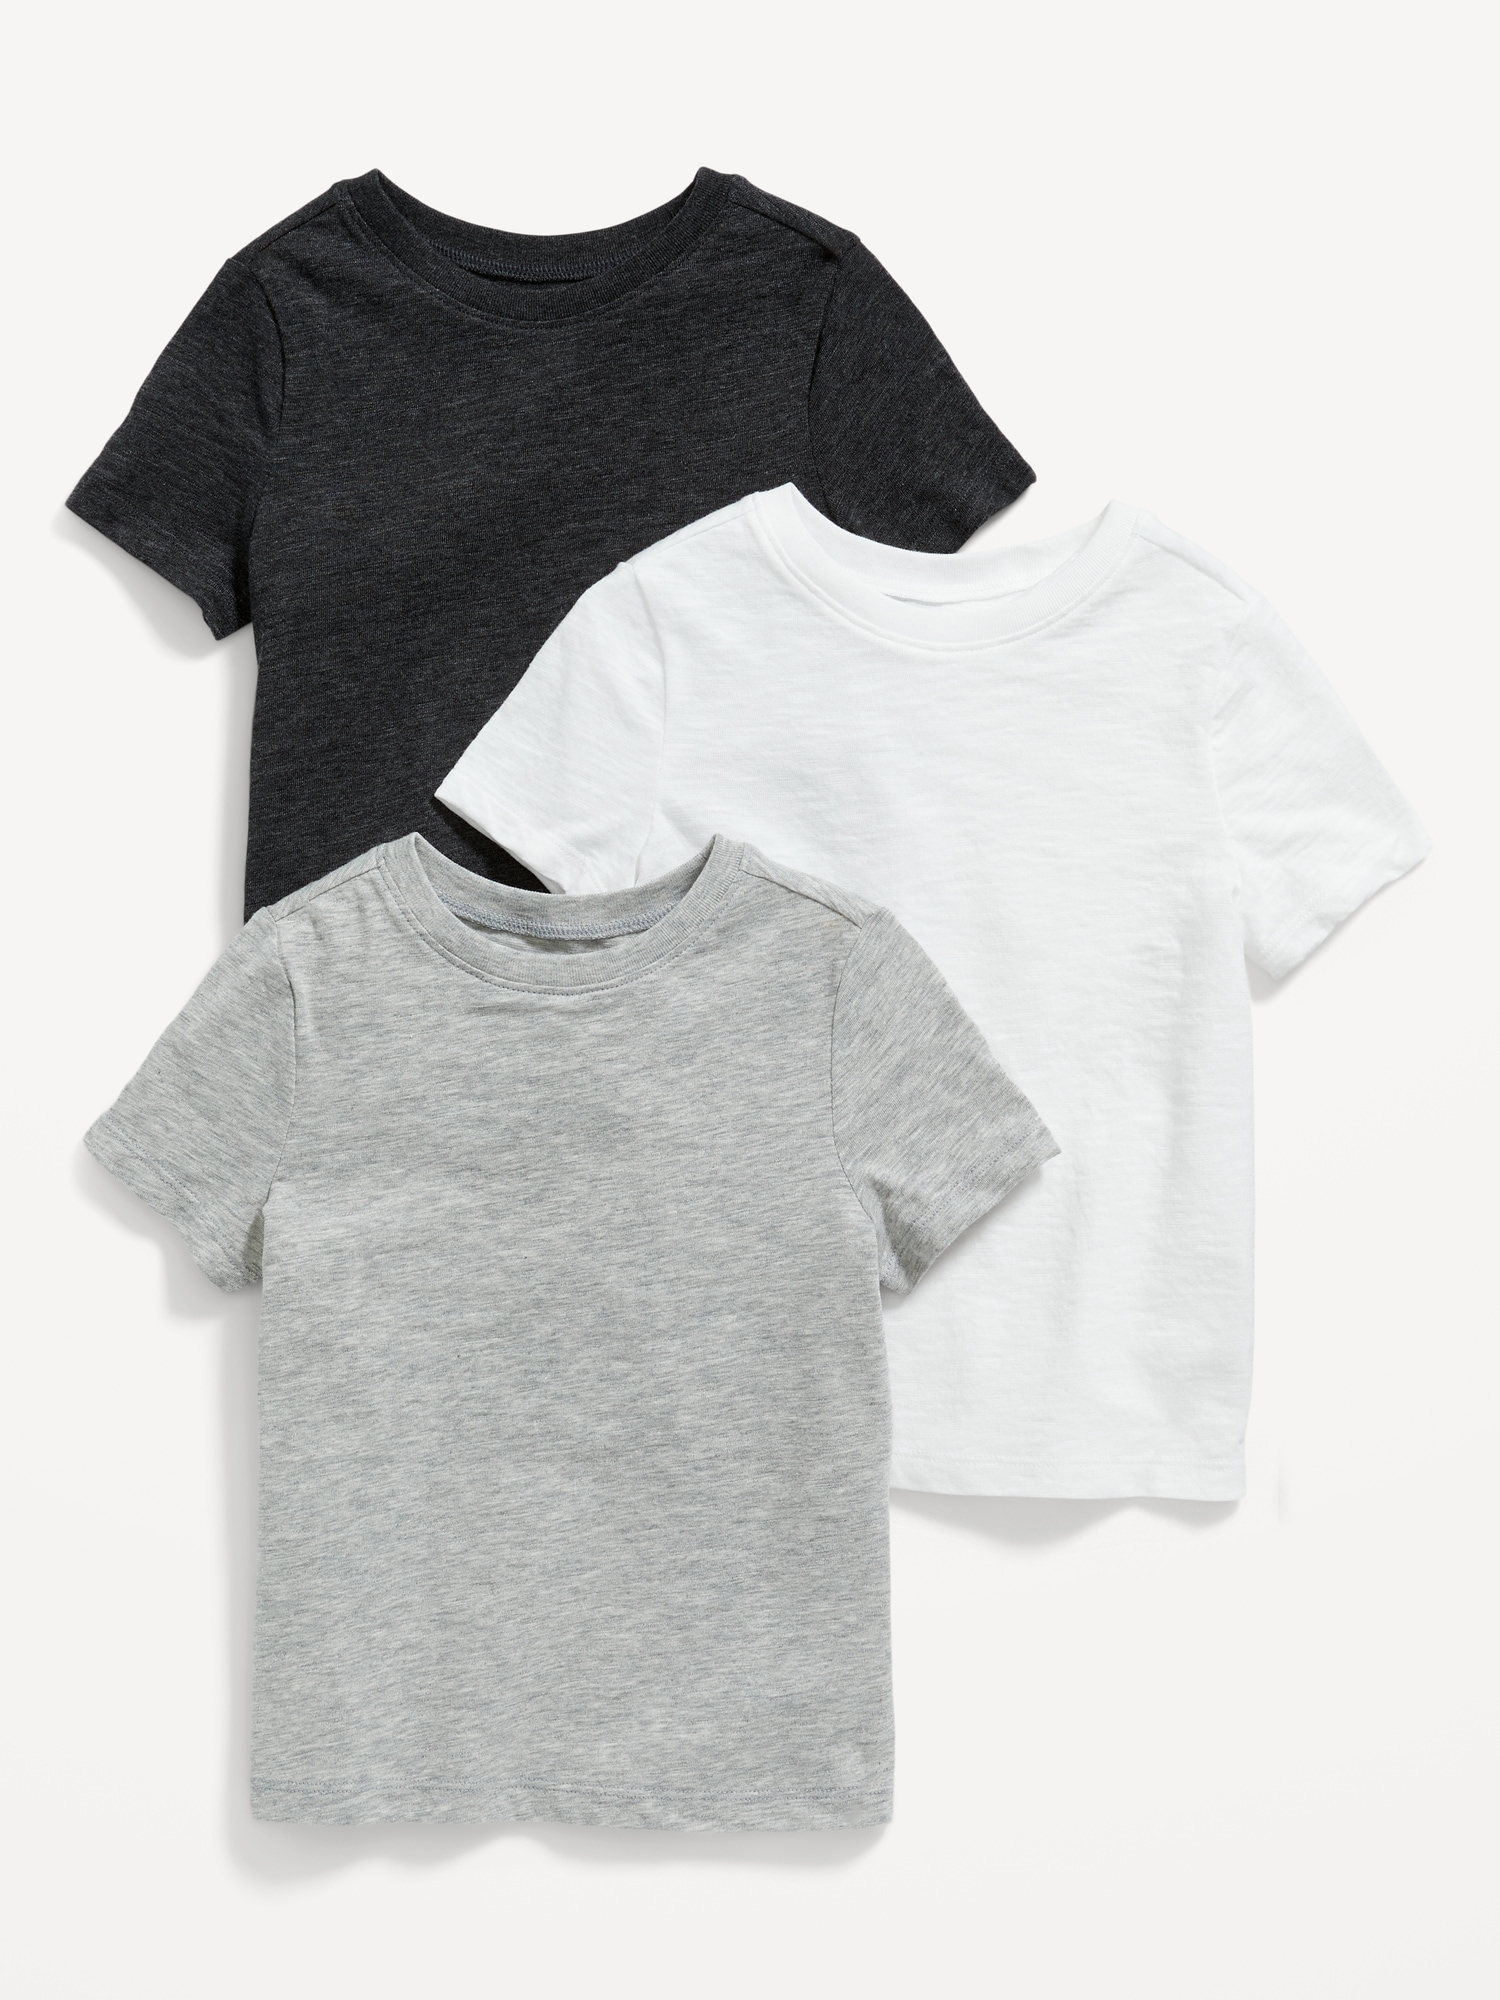 Unisex 3-Pack Short-Sleeve T-Shirt for Toddler Hot Deal